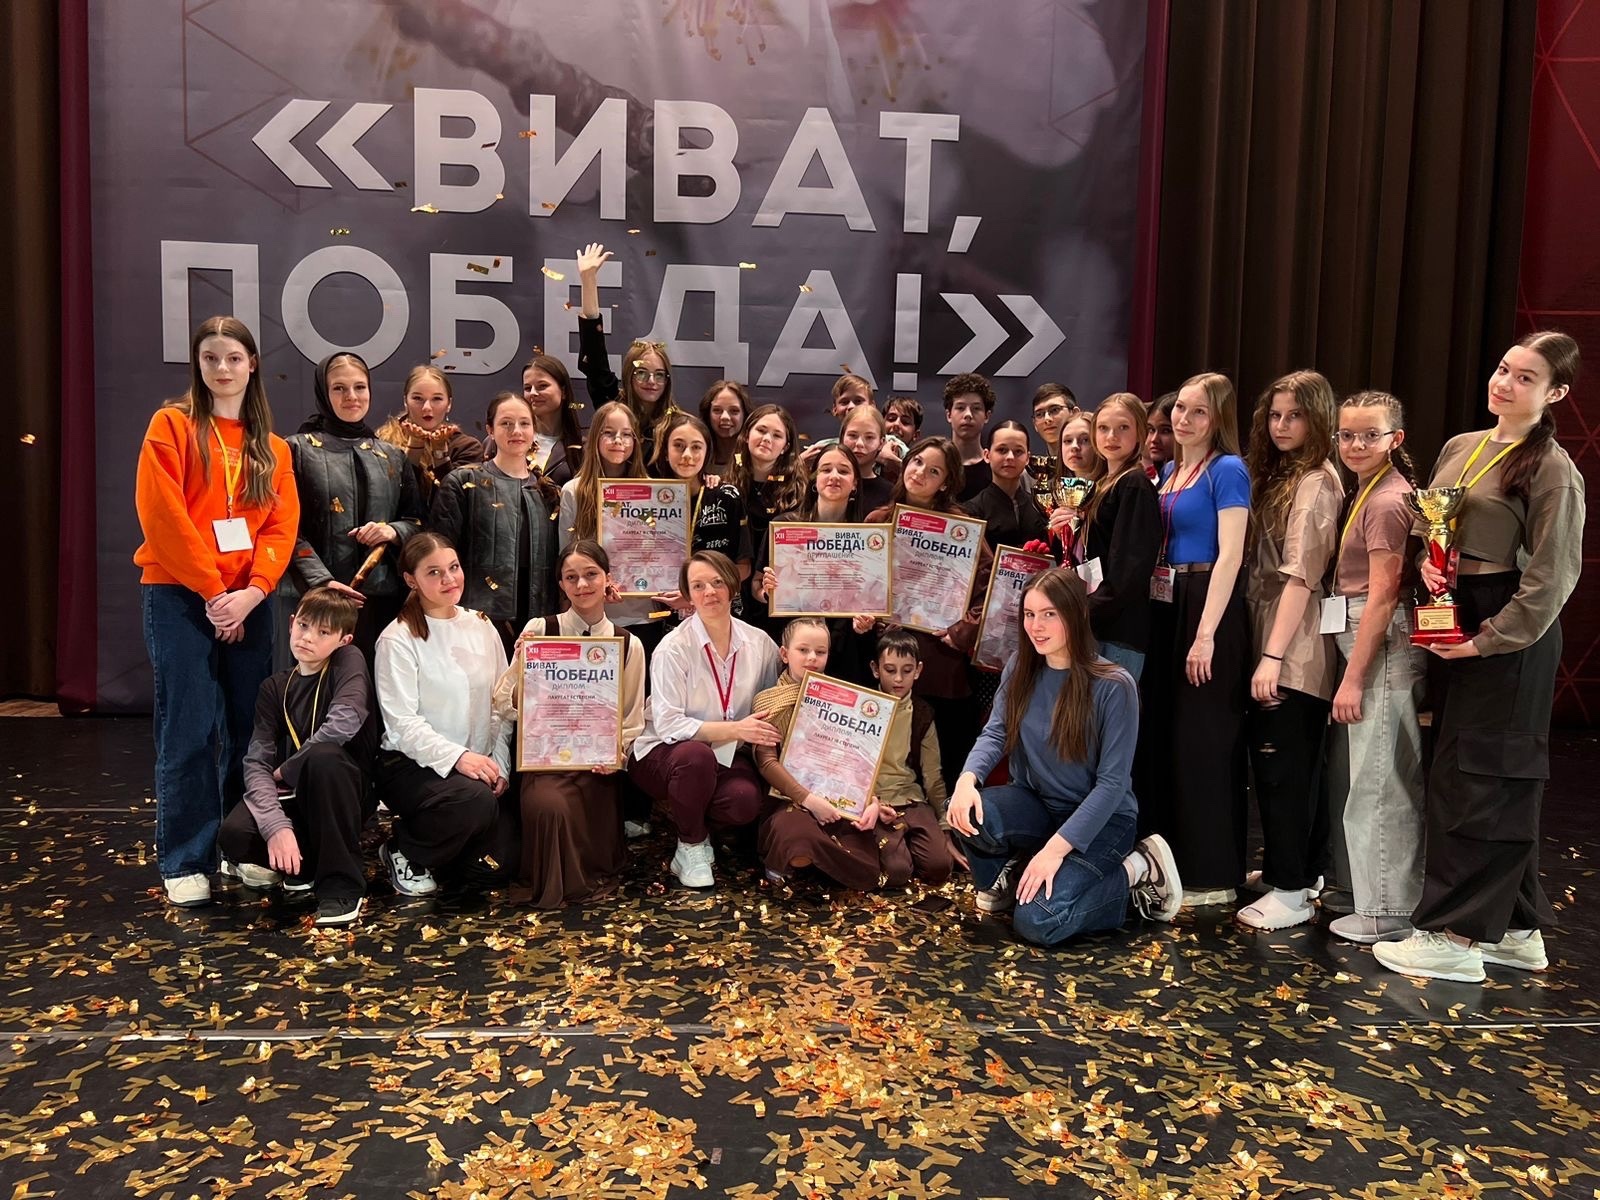 Образцовый театр современного танца «Импульс» стал победителем Всероссийского хореографического конкурса «Виват, ПОБЕДА!»